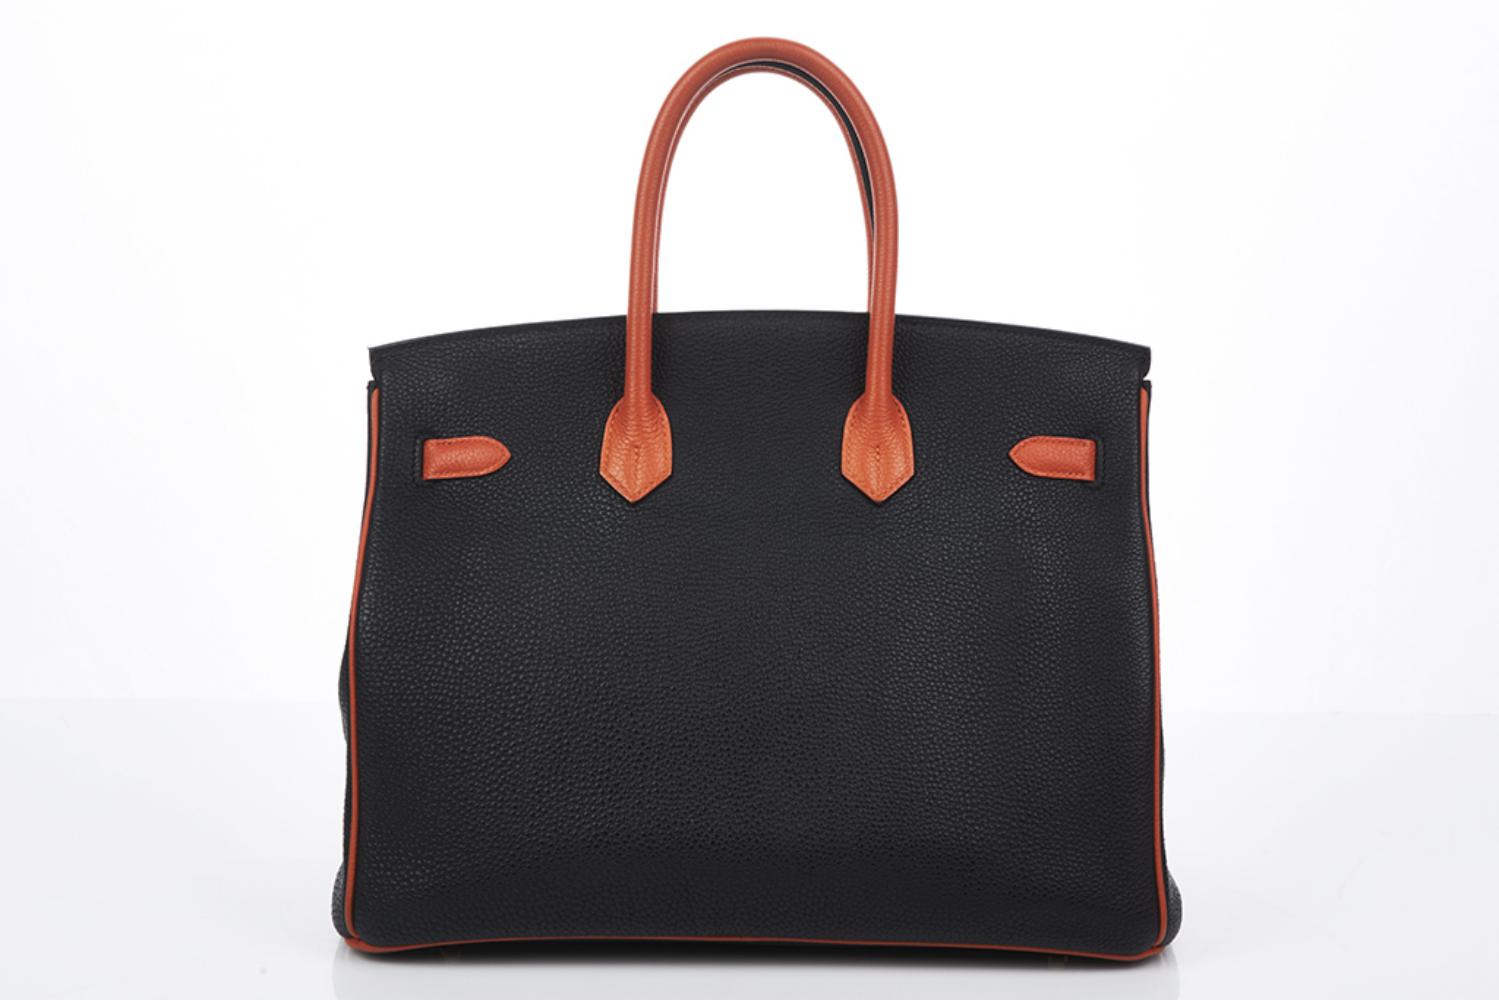 Sold at Auction: Hermes Special Order Black and Orange Togo Birkin 35